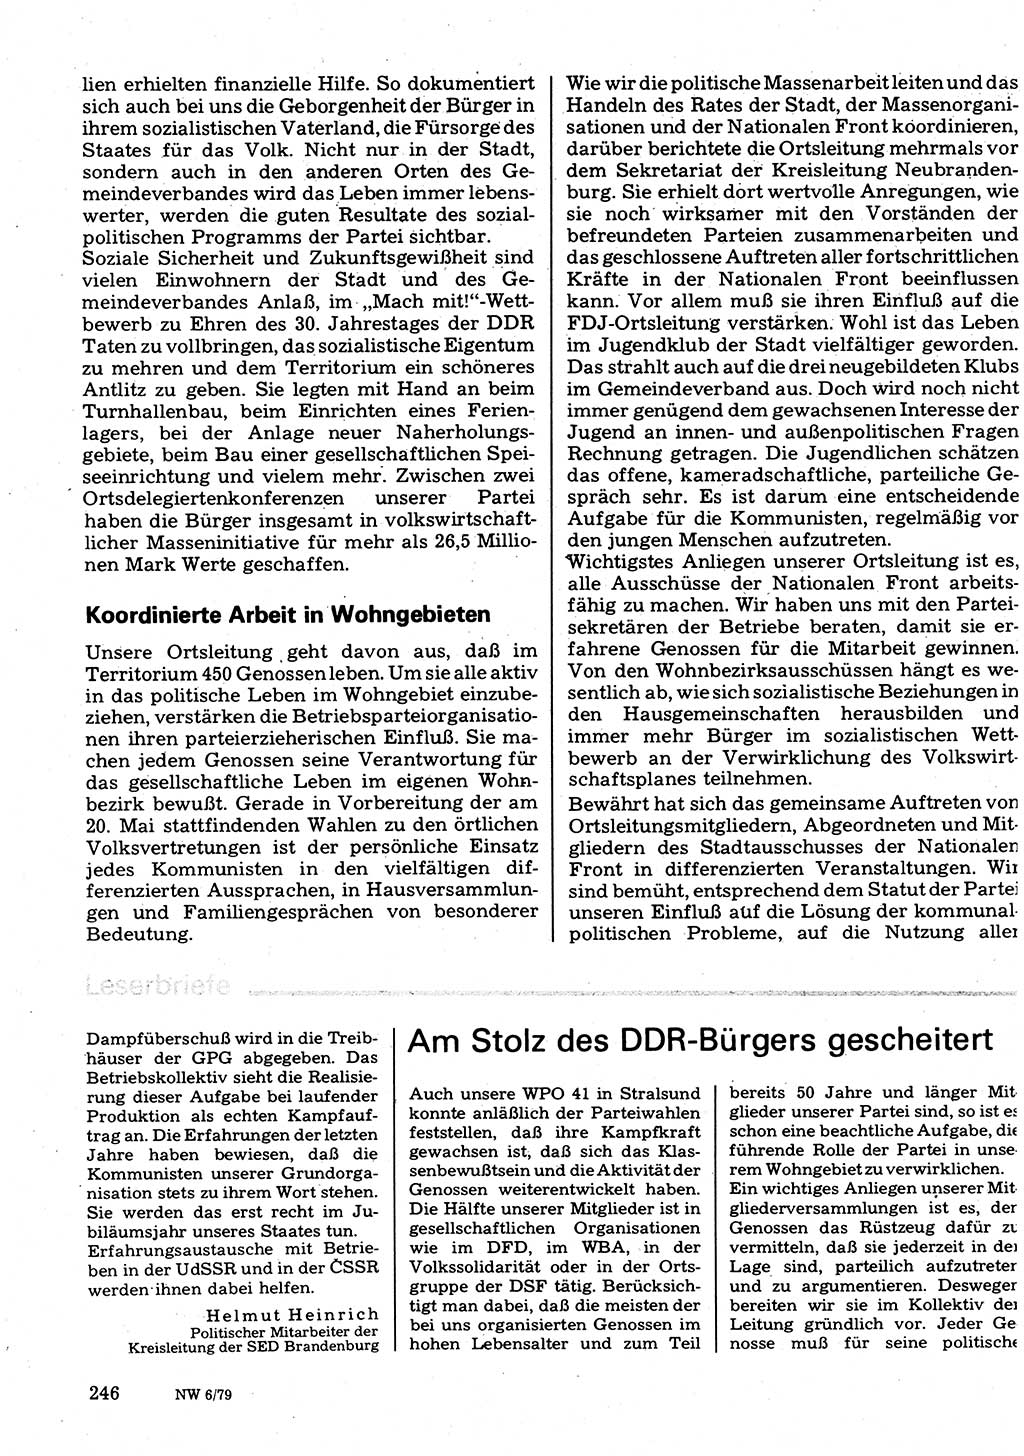 Neuer Weg (NW), Organ des Zentralkomitees (ZK) der SED (Sozialistische Einheitspartei Deutschlands) für Fragen des Parteilebens, 34. Jahrgang [Deutsche Demokratische Republik (DDR)] 1979, Seite 246 (NW ZK SED DDR 1979, S. 246)